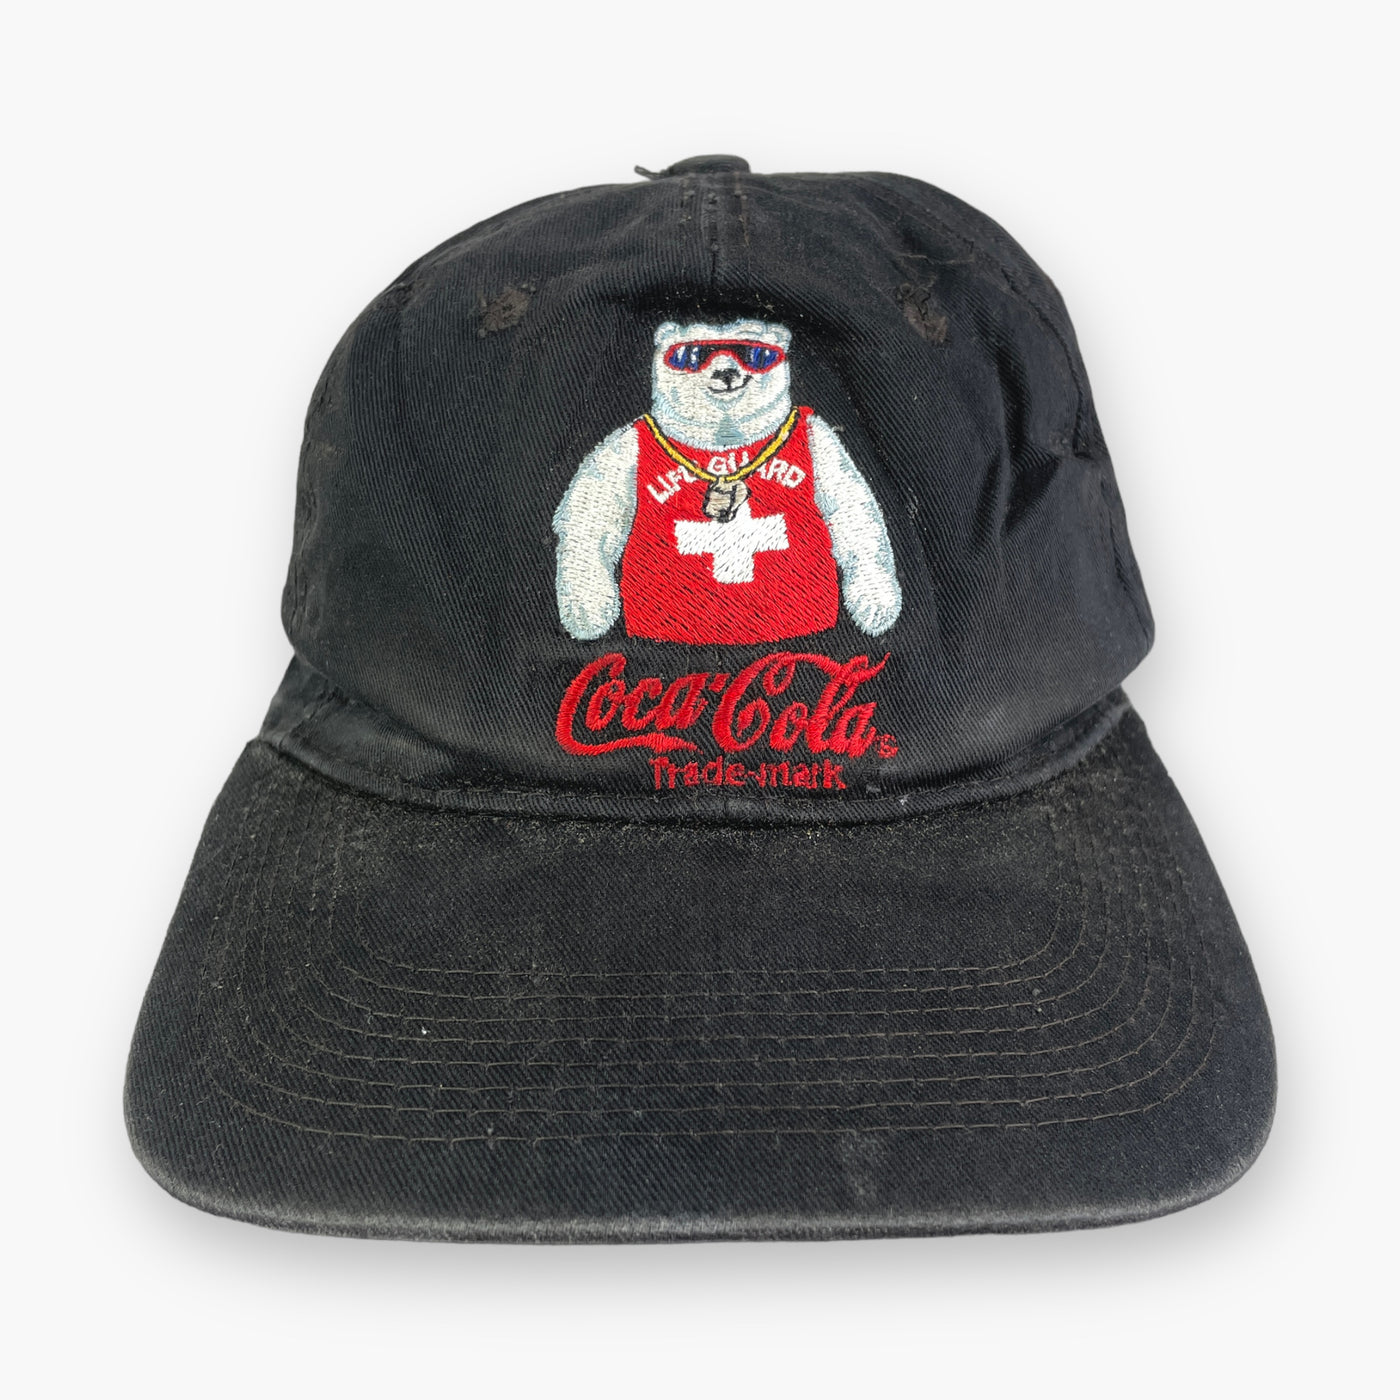 EARLY 90S COCA COLA CAP